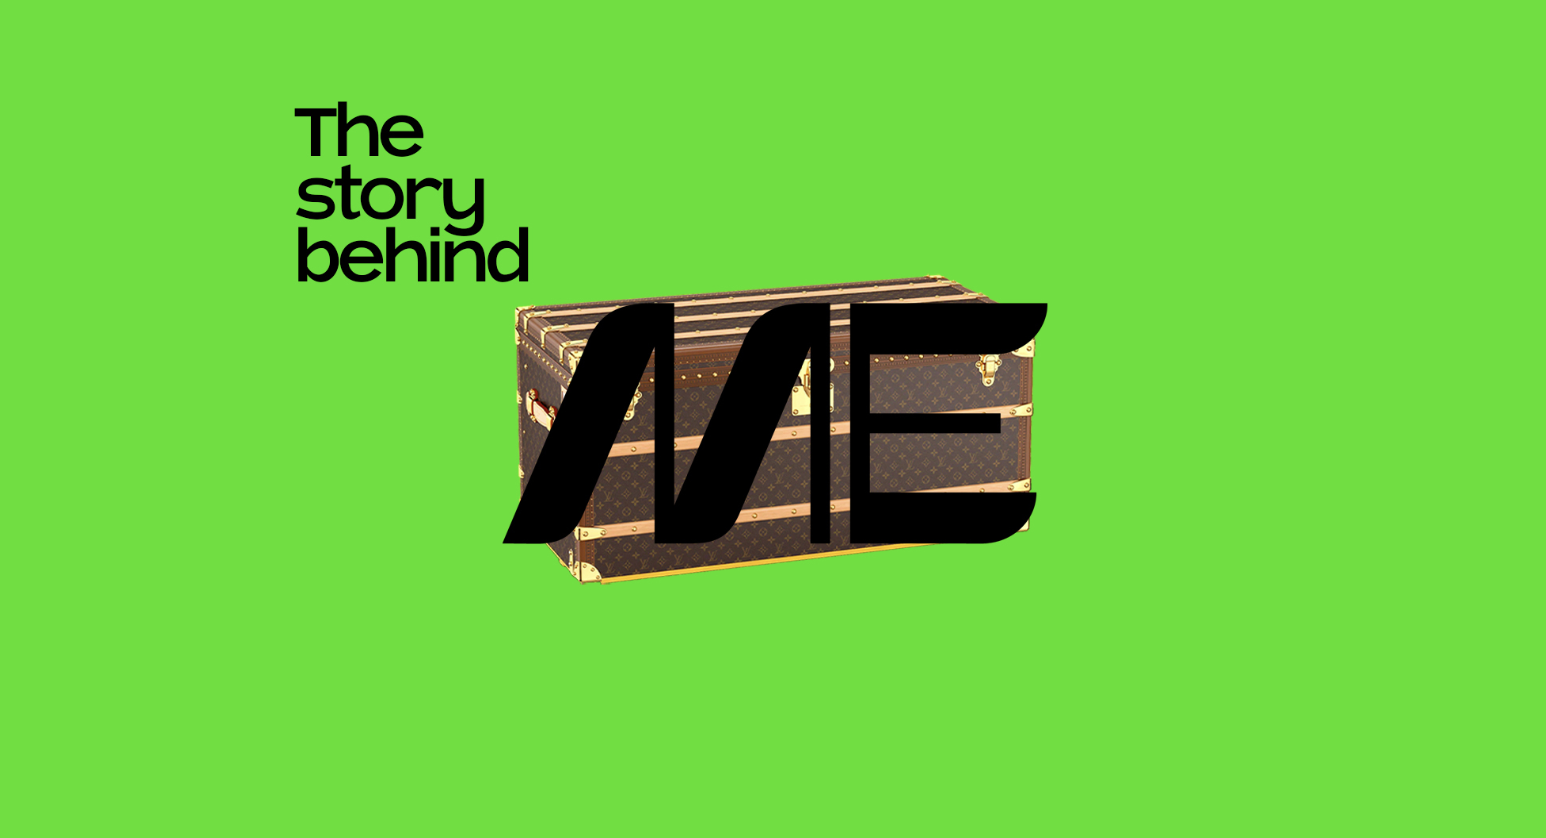 LVMH集团讲述旗下品牌卓越工艺的系列短片 《The Story Behind ME》更新至13集